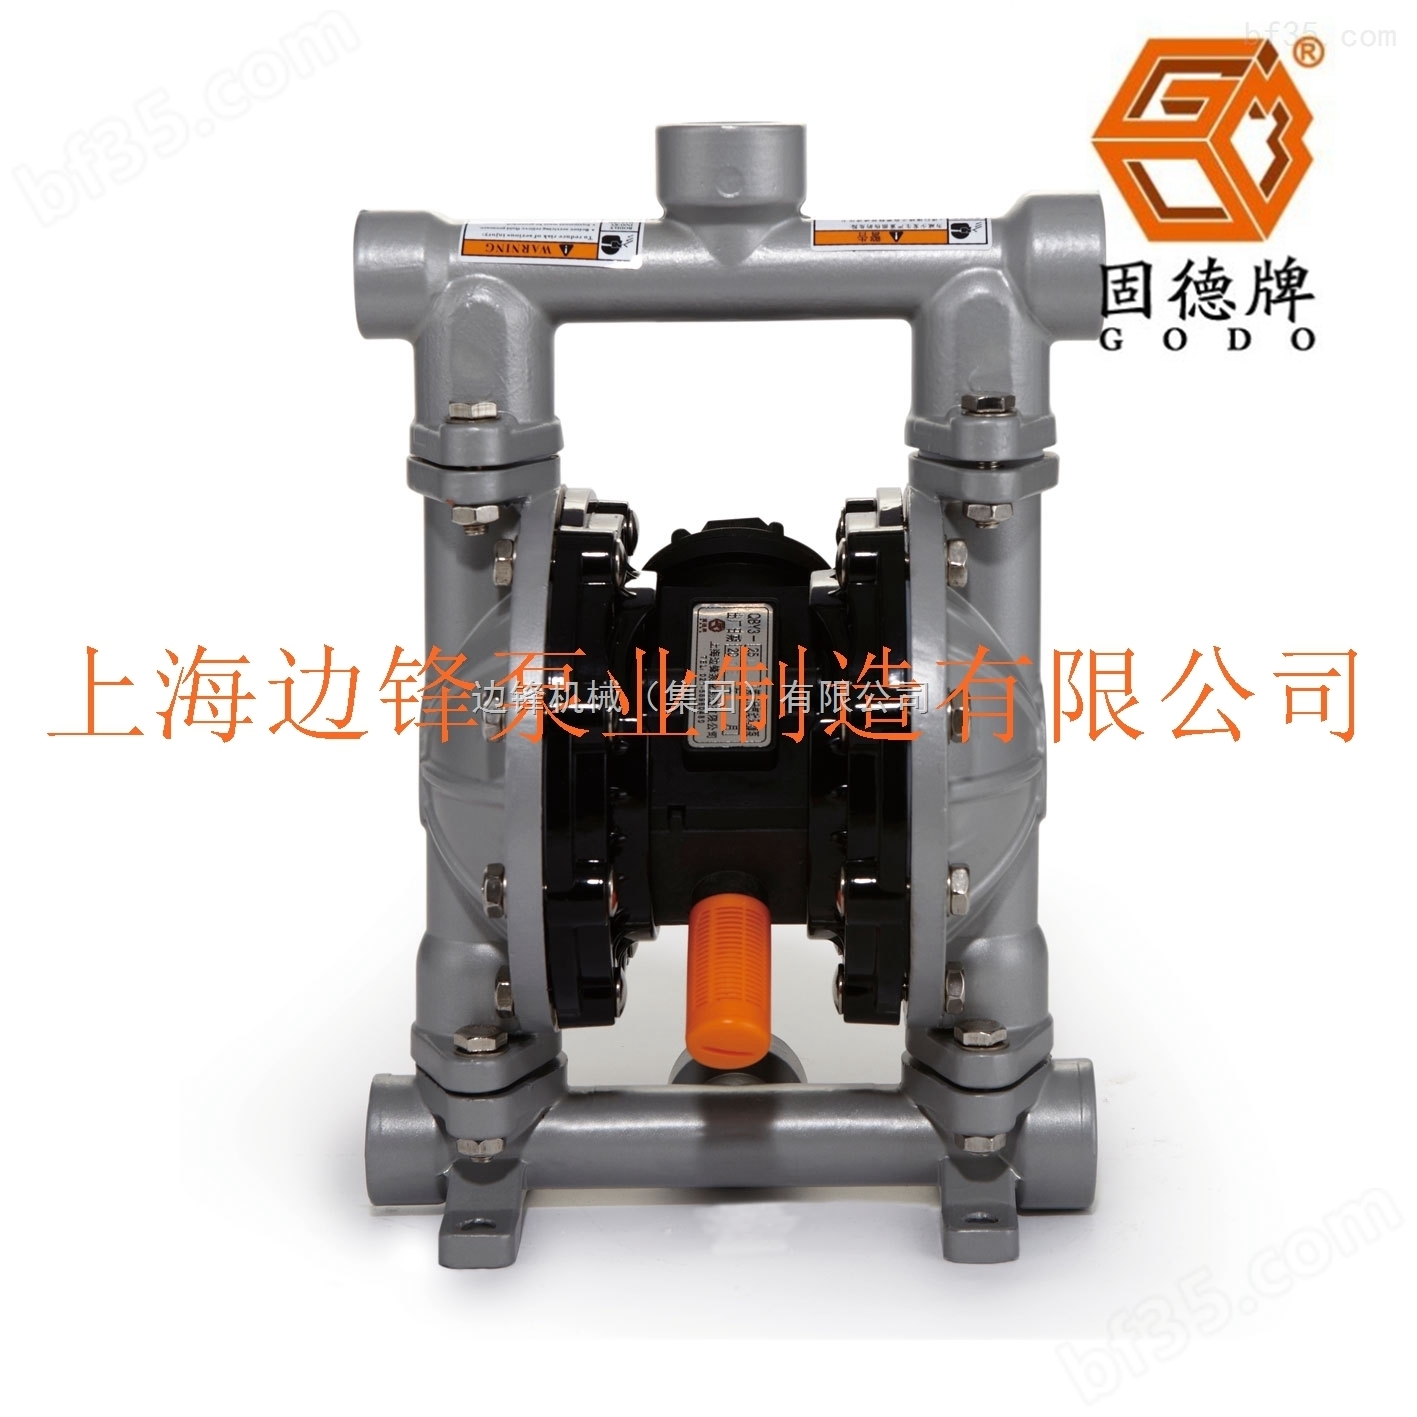 *广州边锋泵业固德牌铝合金气动隔膜泵无泄漏密封涂料输送泵QBY3-20LF